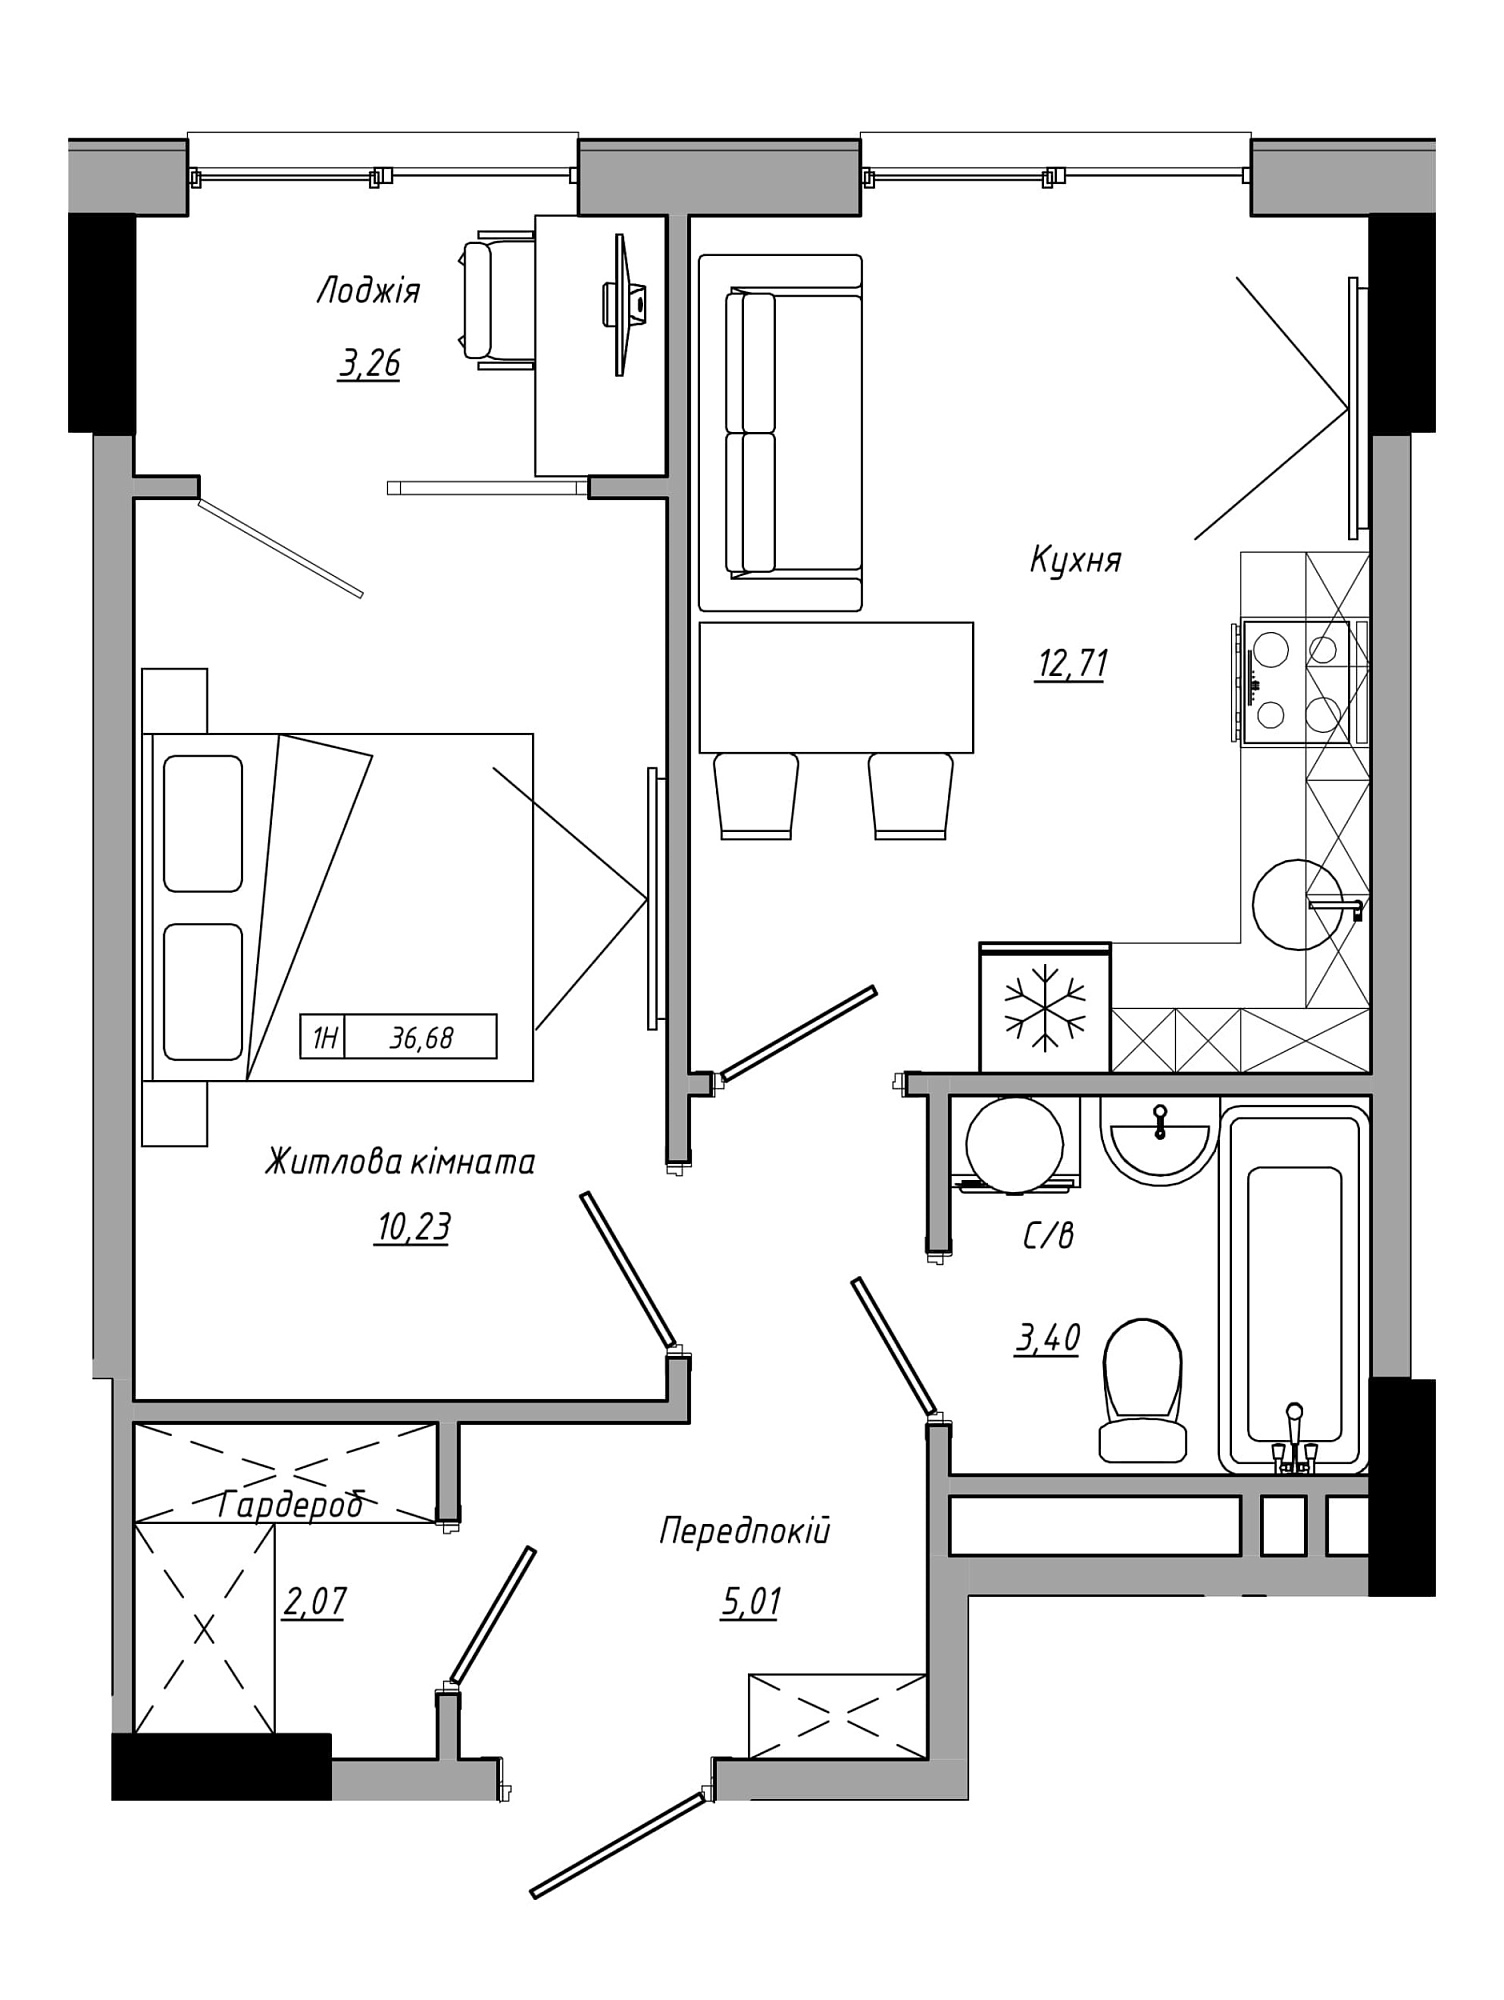 Планування 1-к квартира площею 36.68м2, AB-21-10/00016.